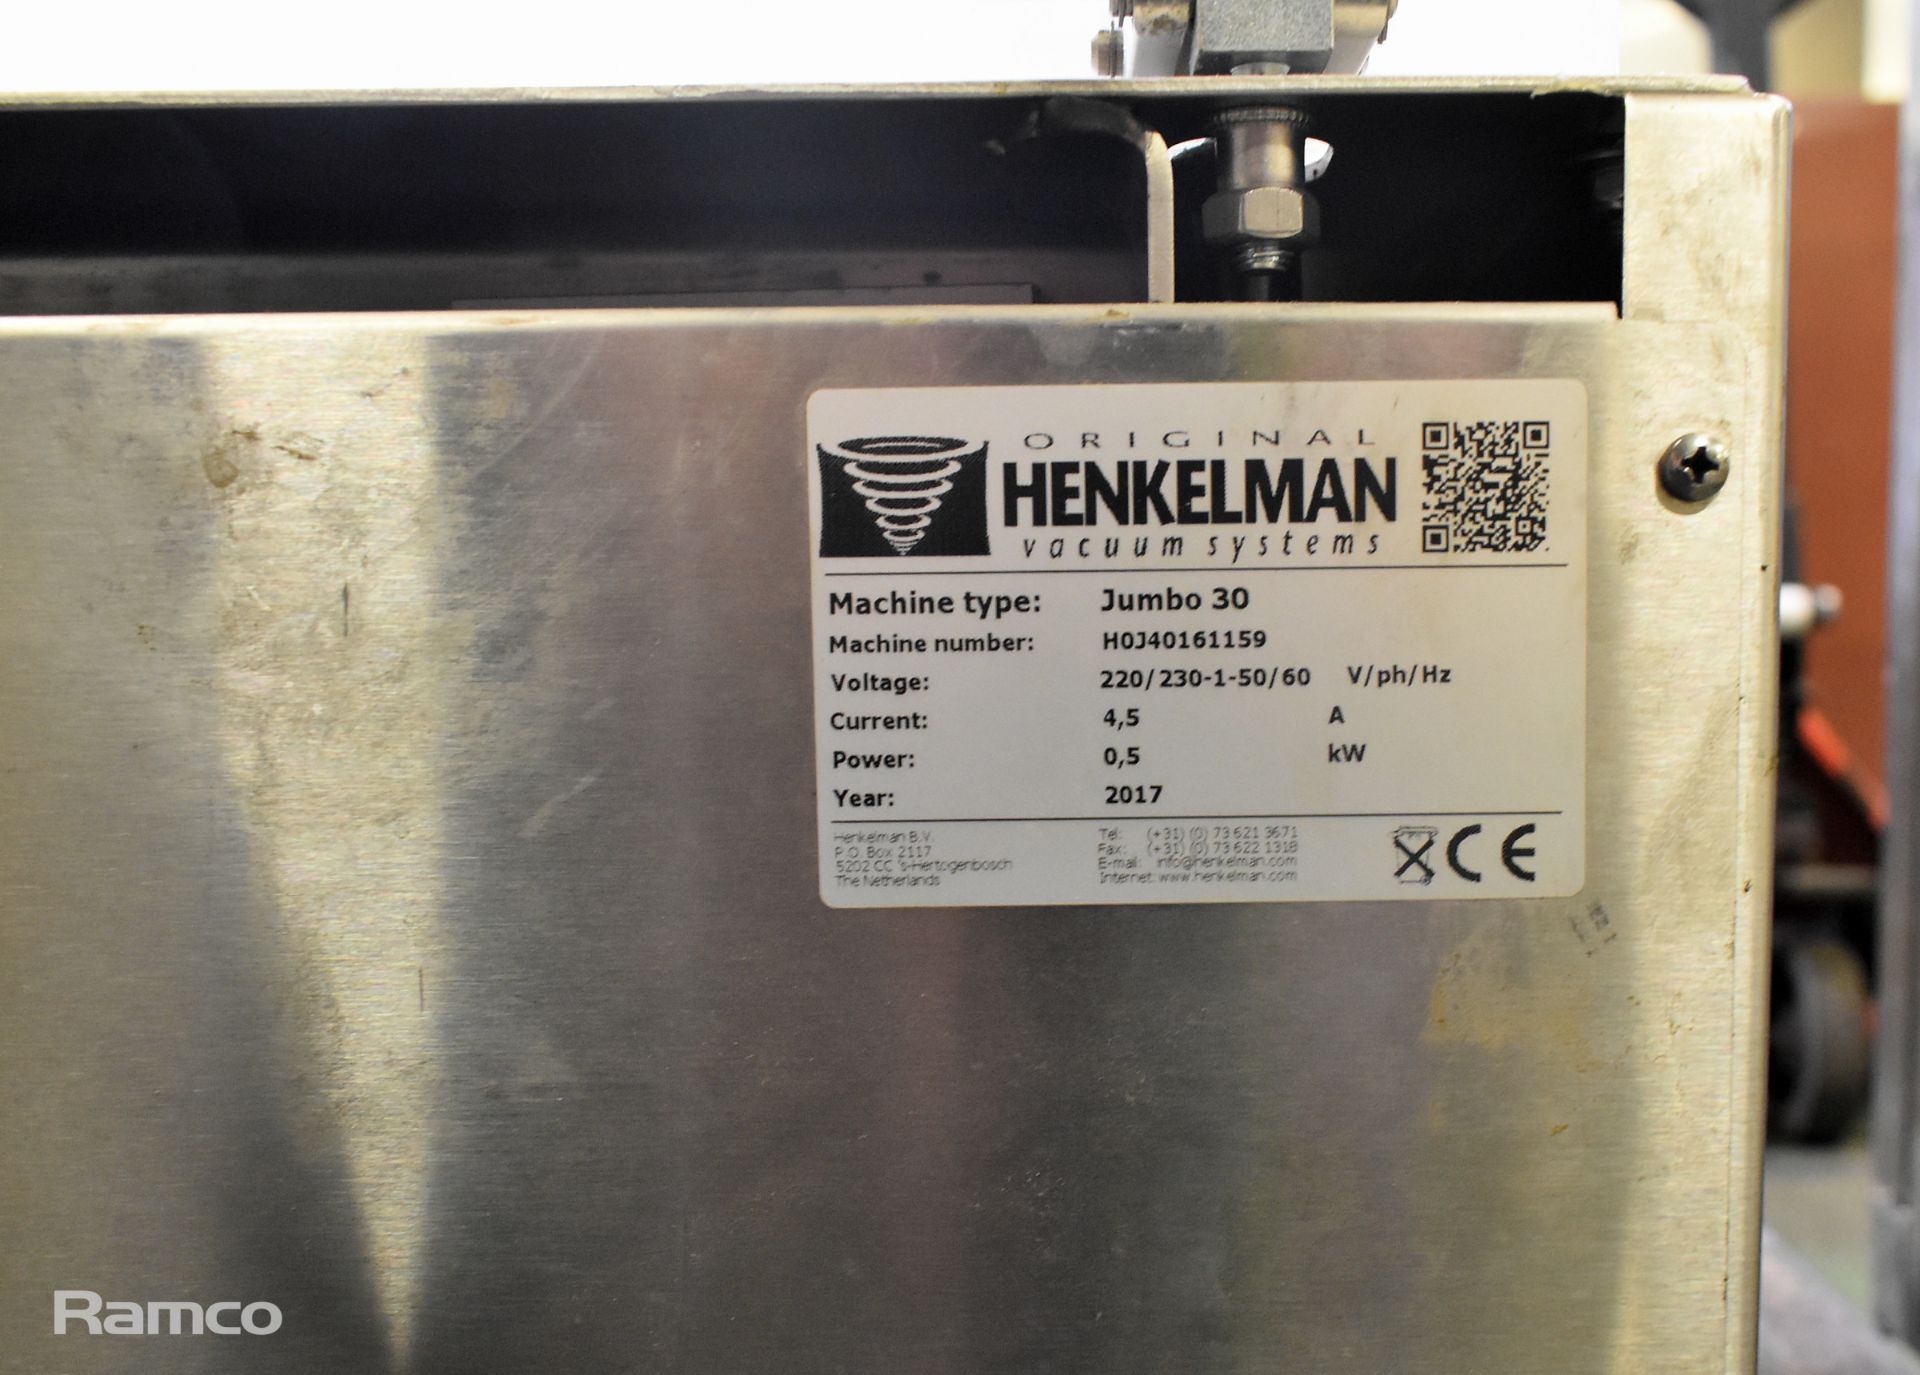 Henkelman Jumbo 30 stainless steel vacuum packing machine - W 450 x D 540 x H 360mm - Image 7 of 7